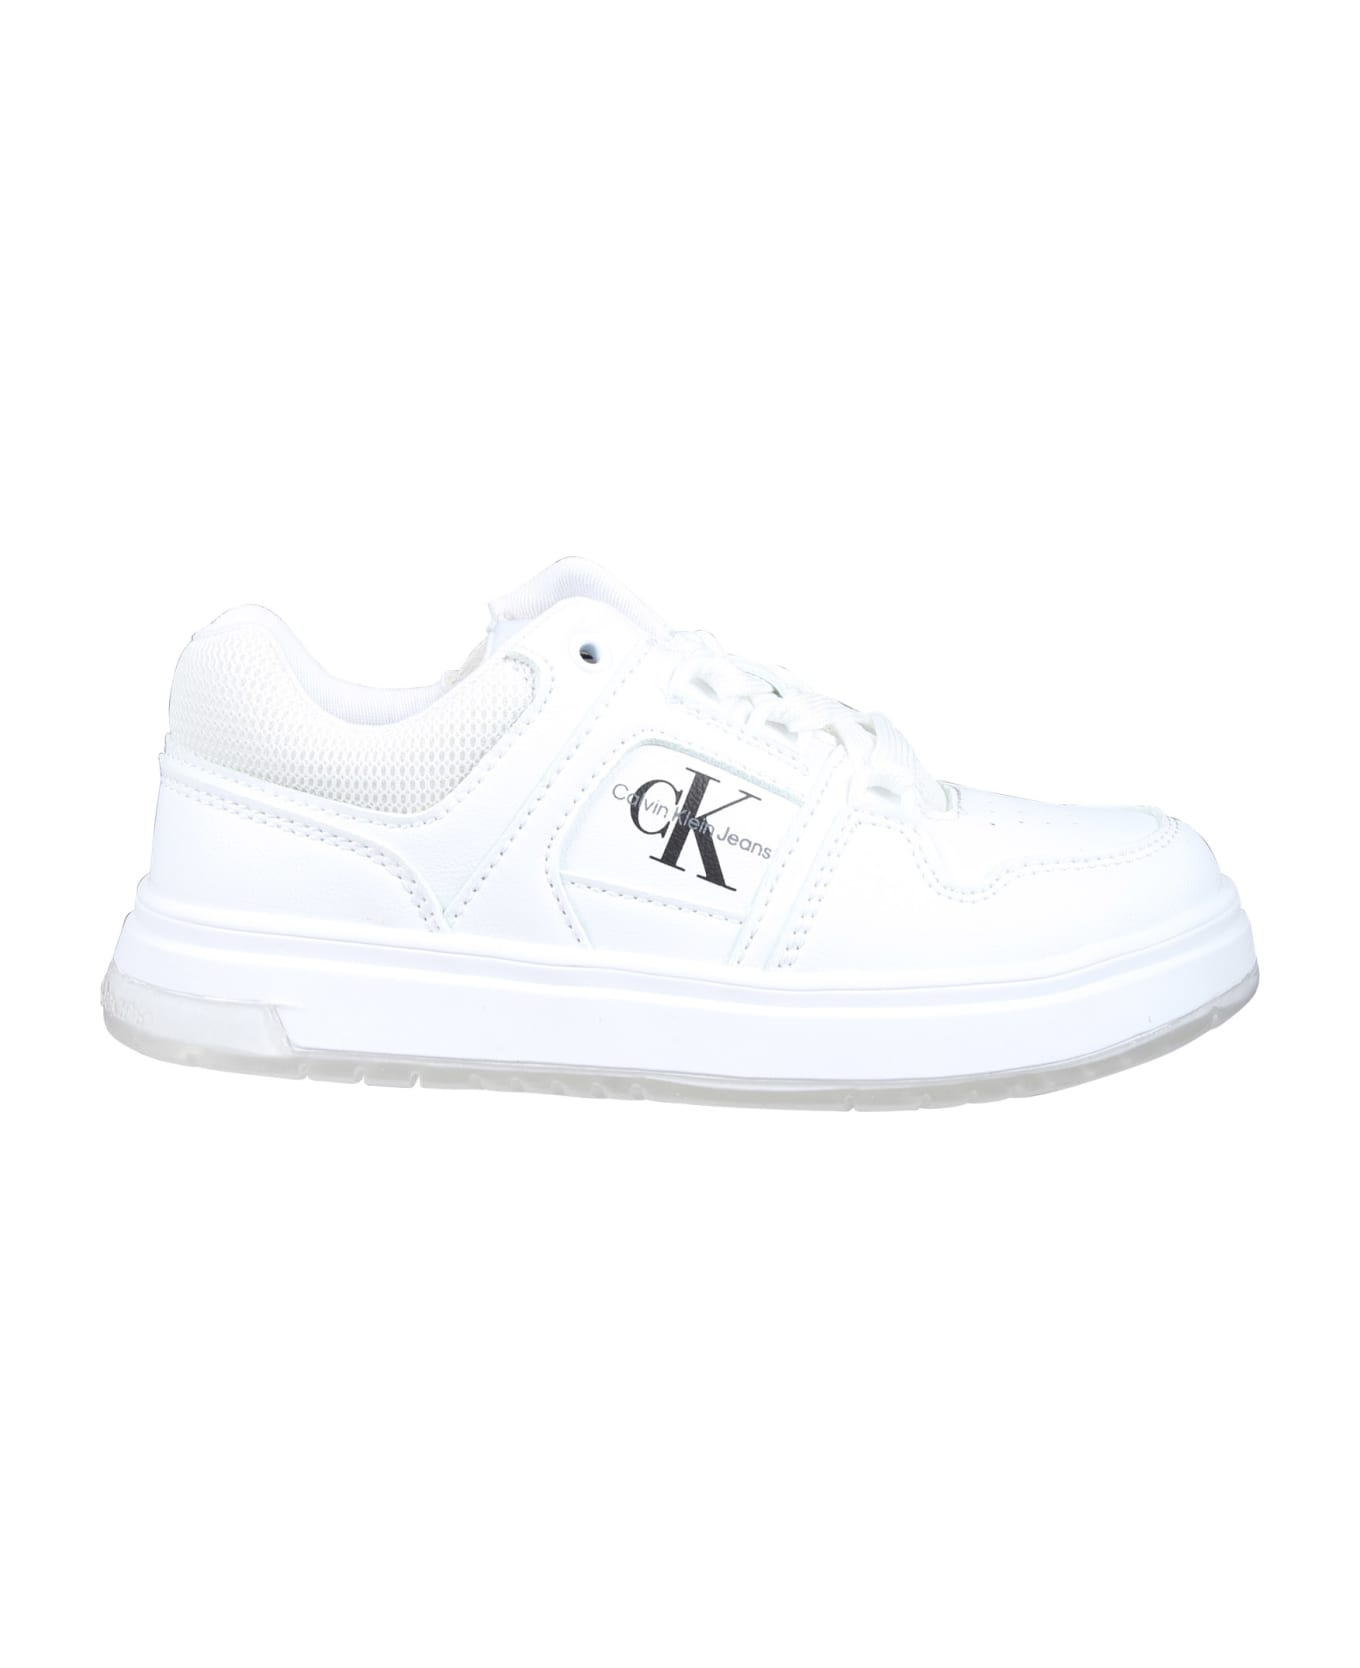 Calvin Klein White Sneakers For Kids With Logo - White シューズ